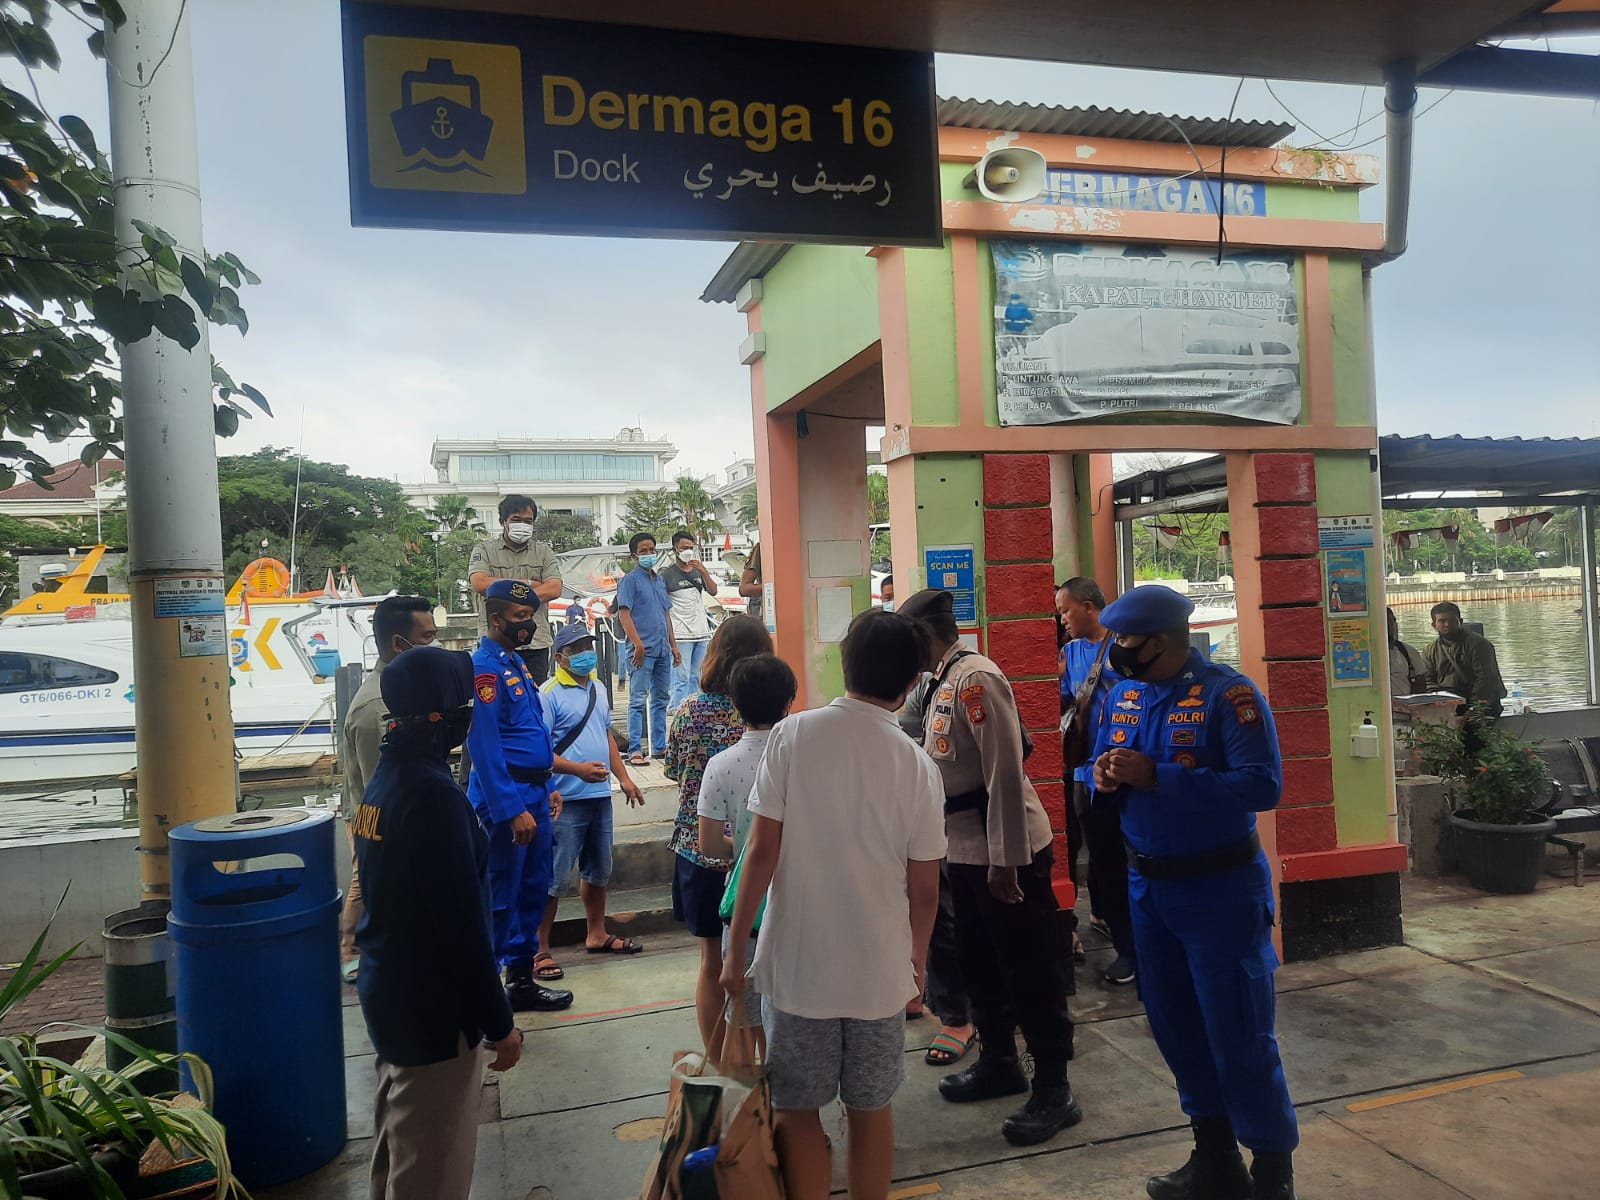 Di Dermaga Marina Ancol, 91 Penumpang Akan ke Pulau Dapat Himbauan ProKes dan Diminta Scan Barcode Peduli Lindungi Oleh Polres Kep Seribu